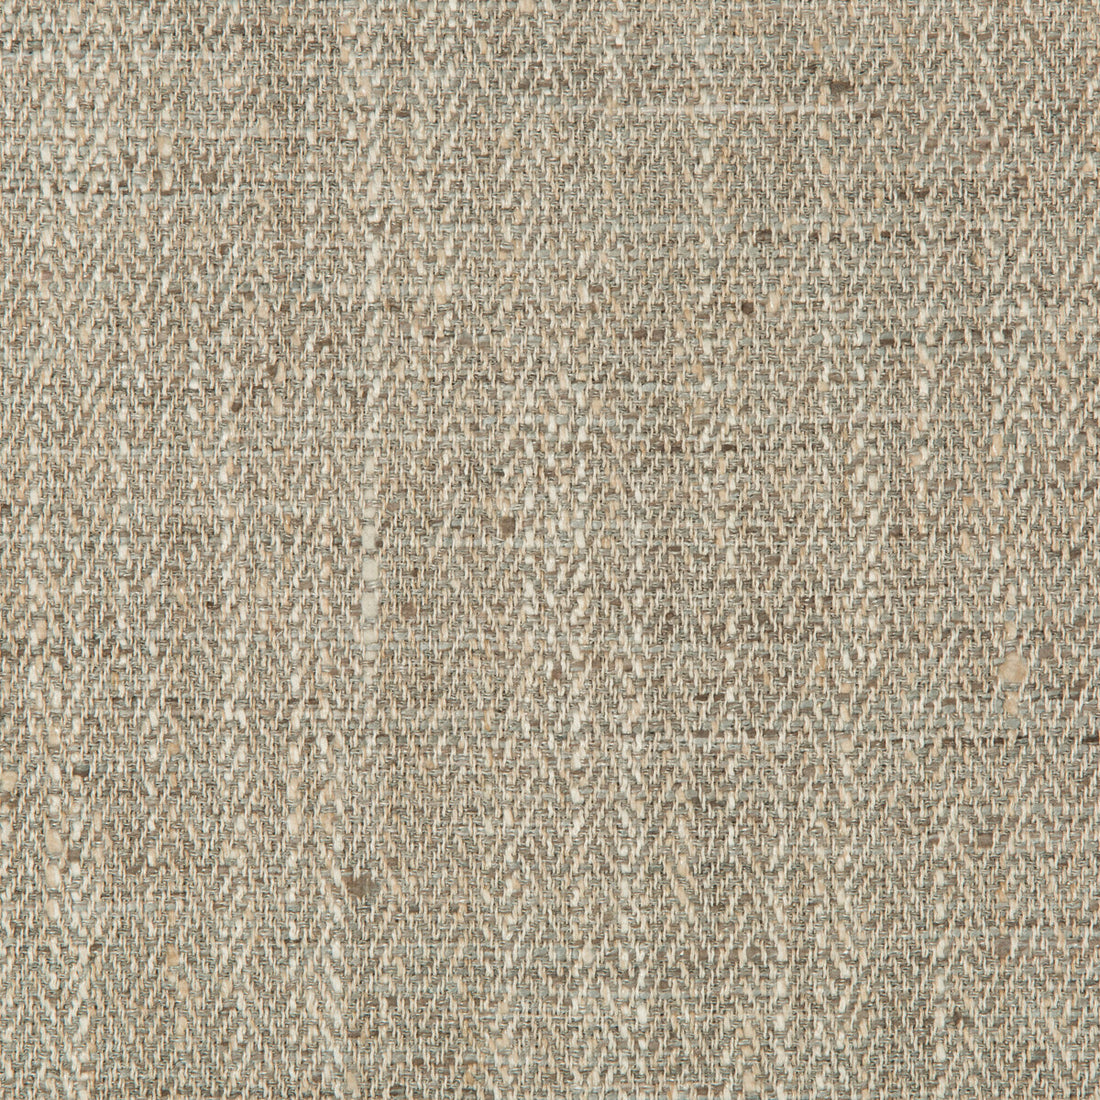 Kravet Basics fabric in 35241-11 color - pattern 35241.11.0 - by Kravet Basics